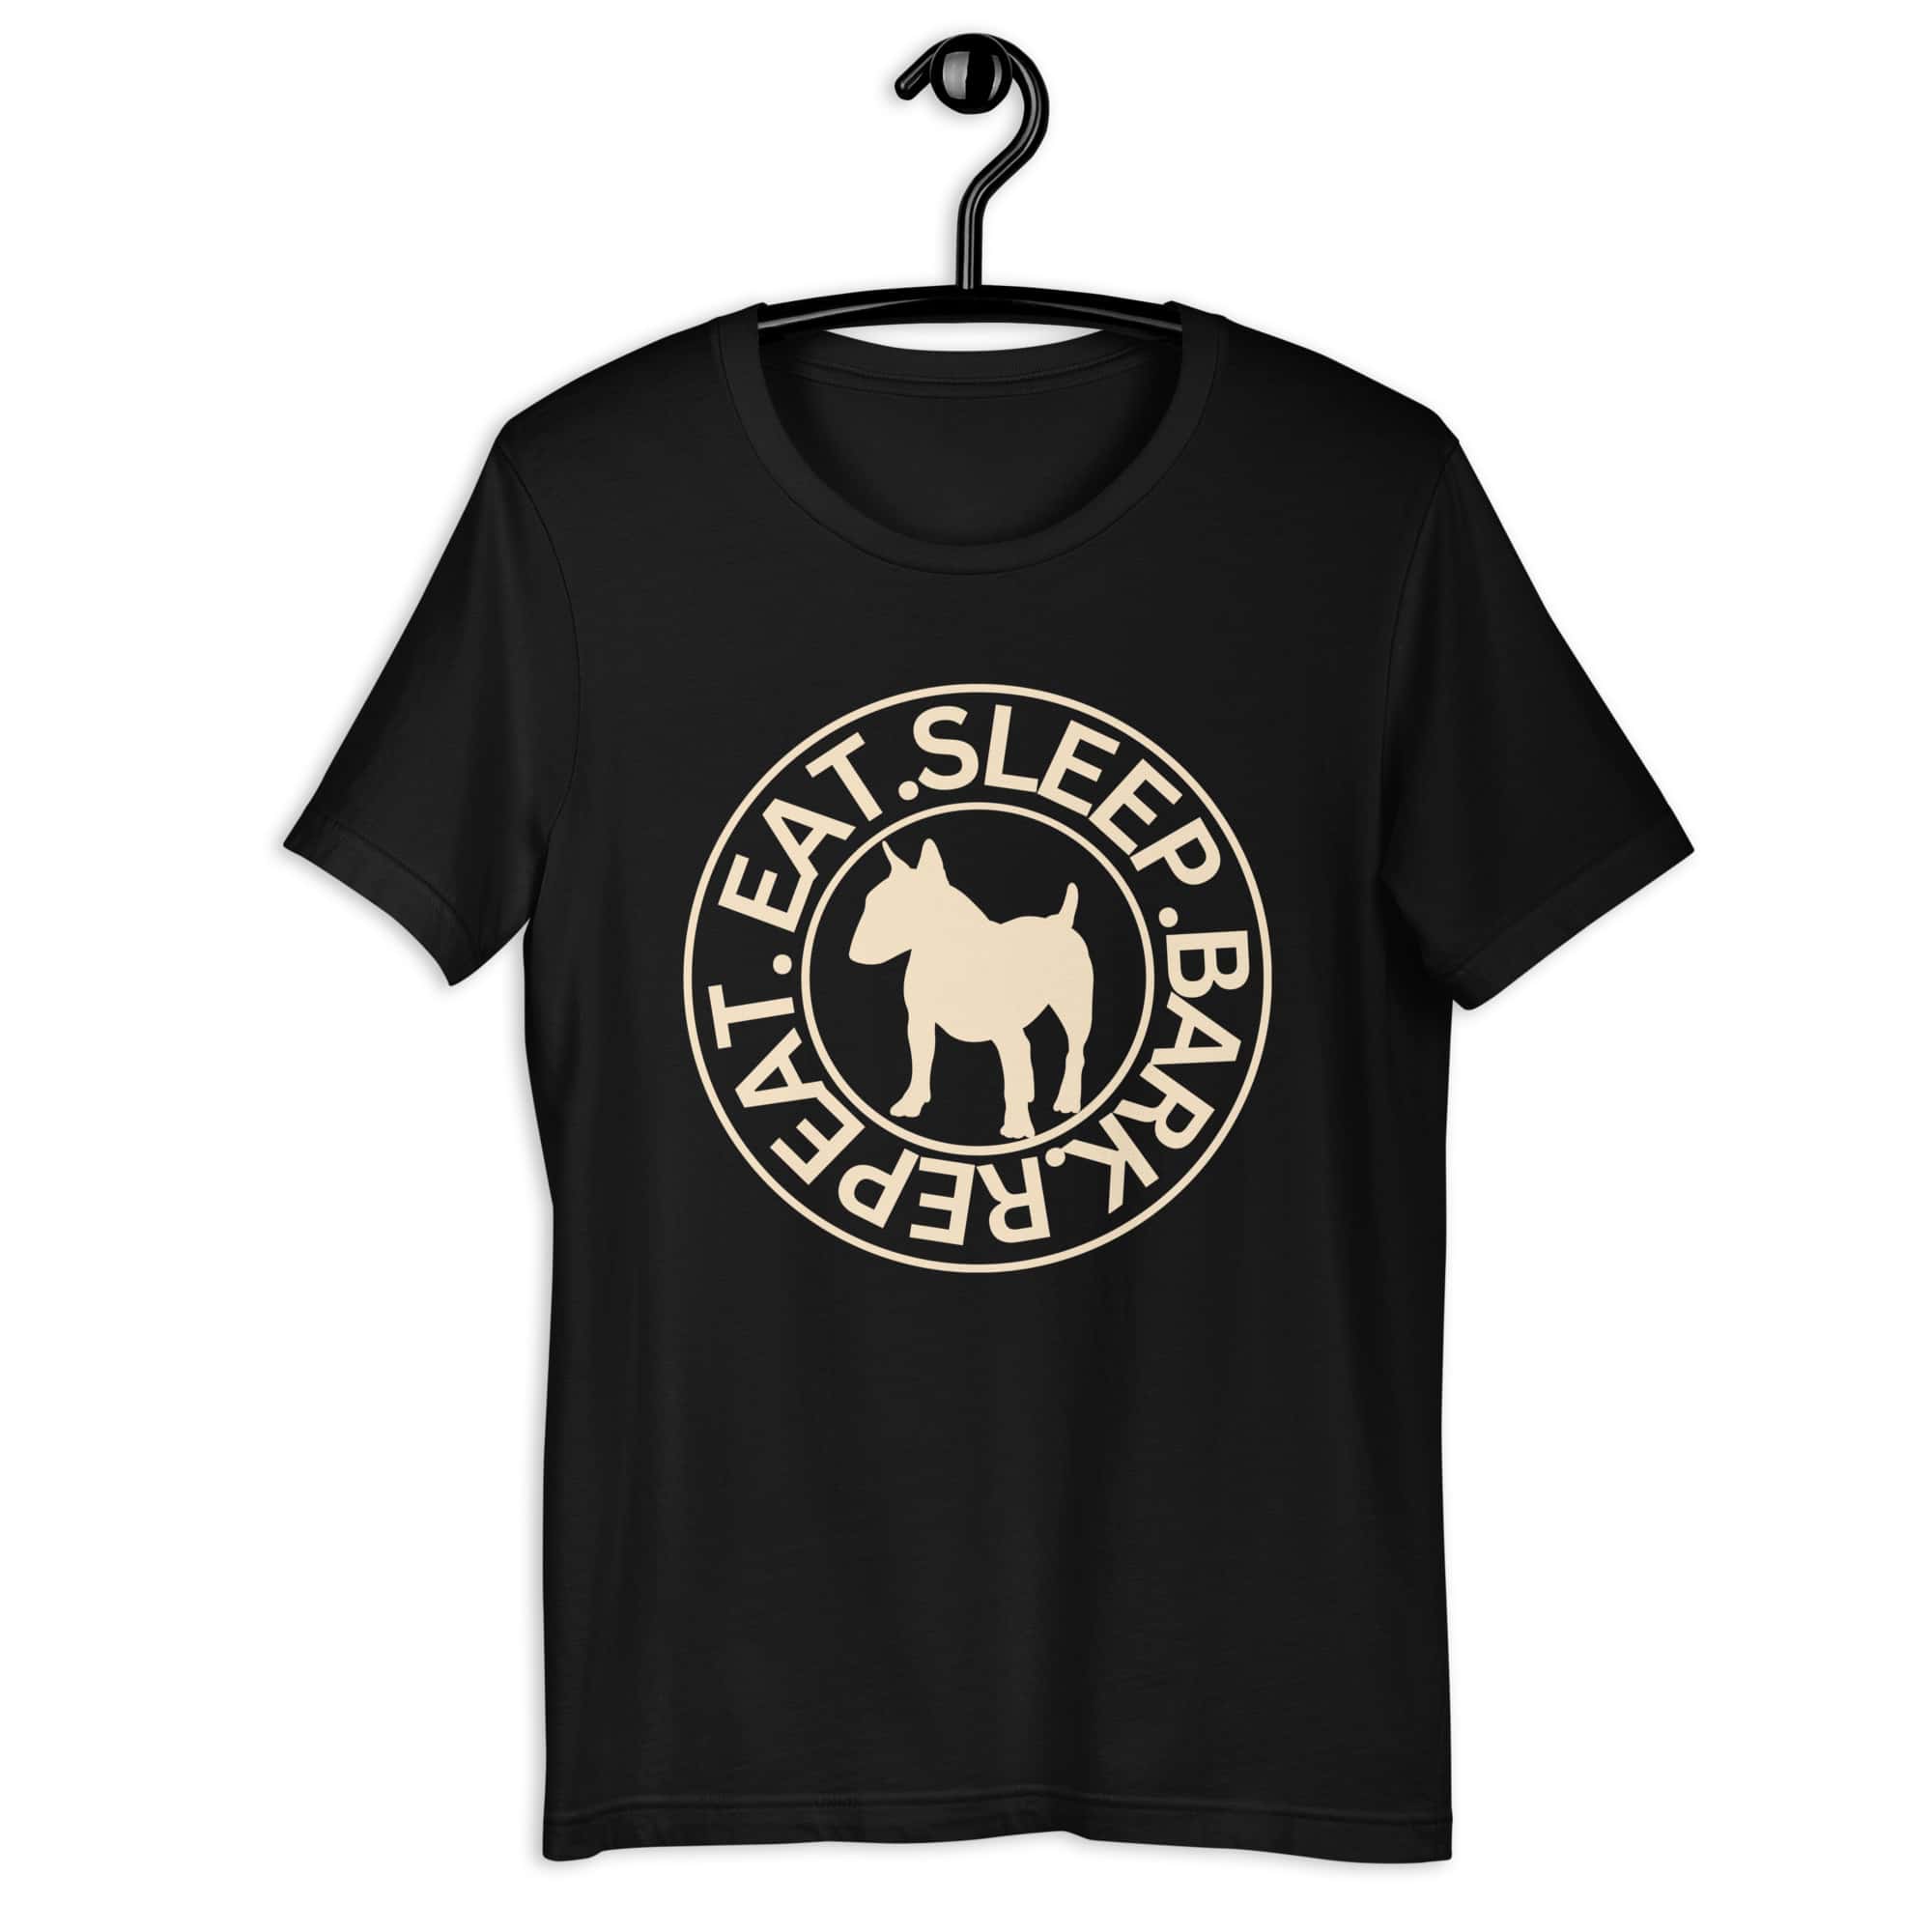 Eat Sleep Bark Repeat Bull Terrier Unisex T-Shirt. Black